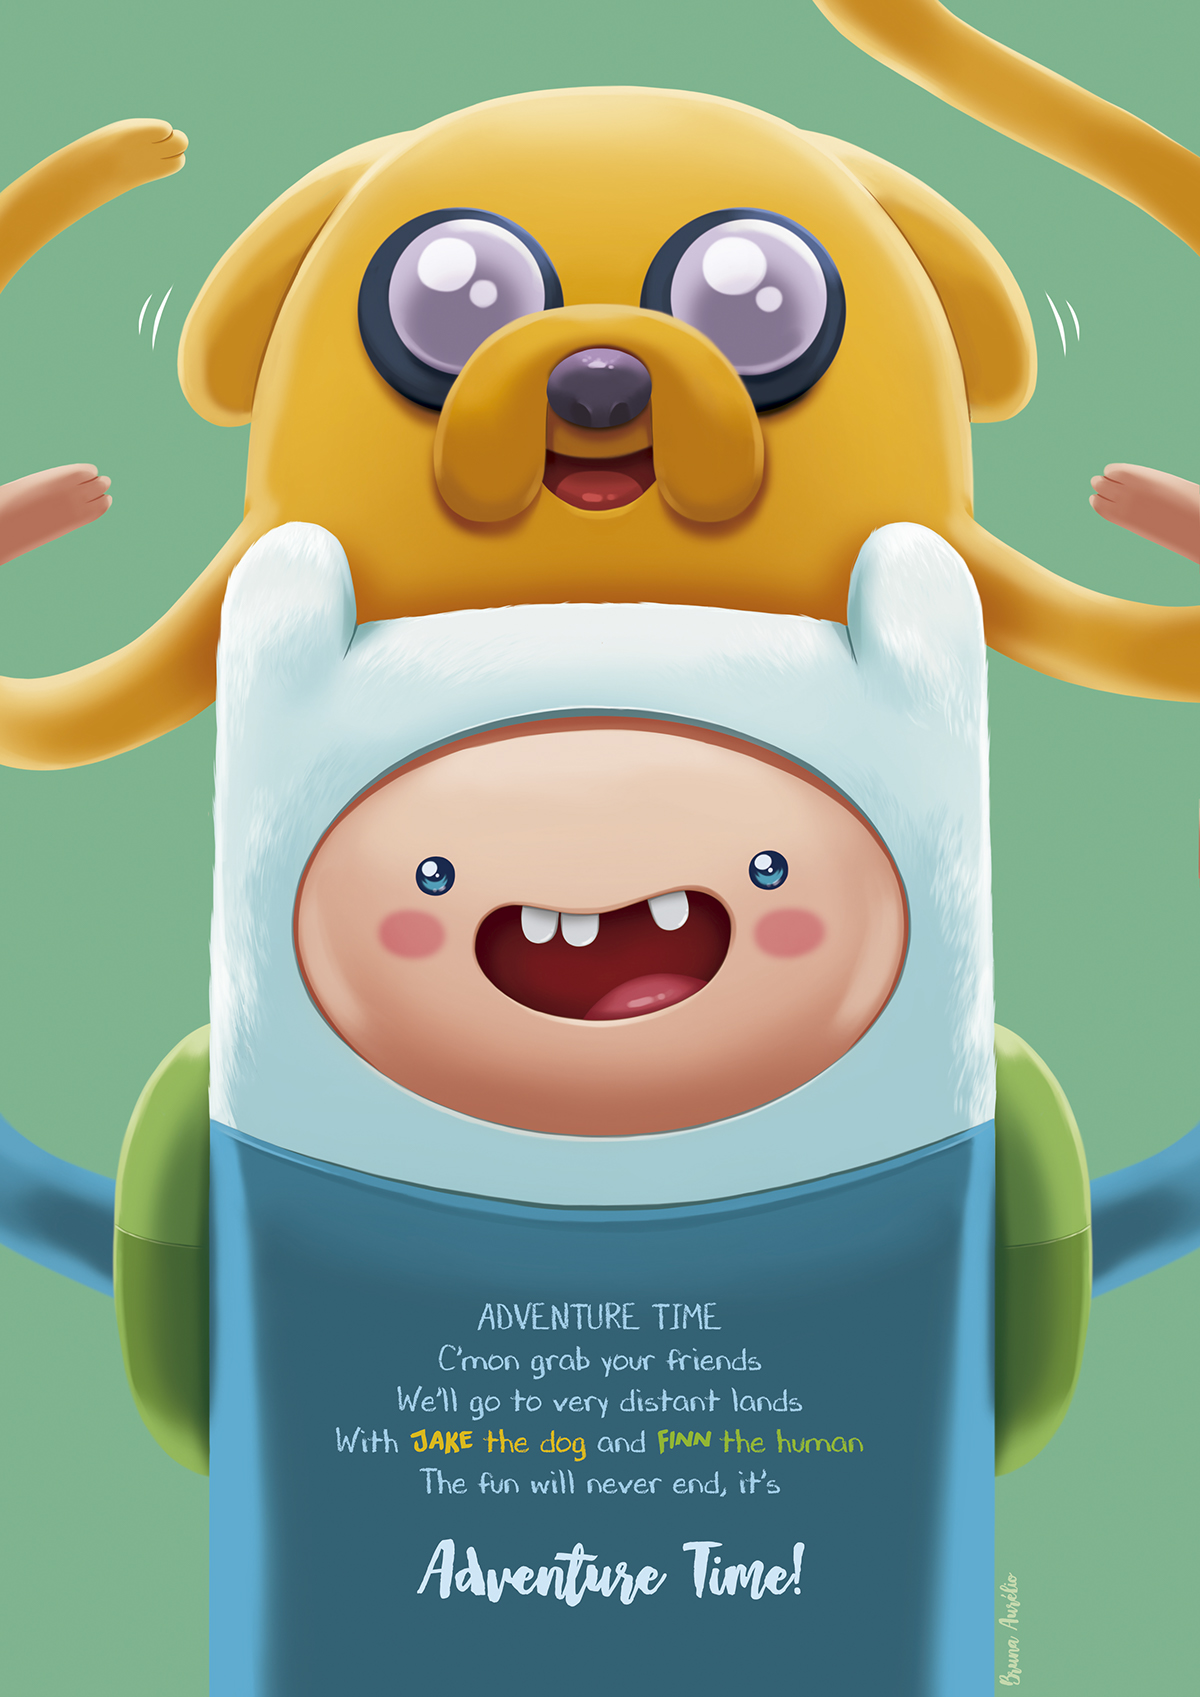 Adventure Time Finn Jake poster ILLUSTRATION  HORA DE AVENTURA